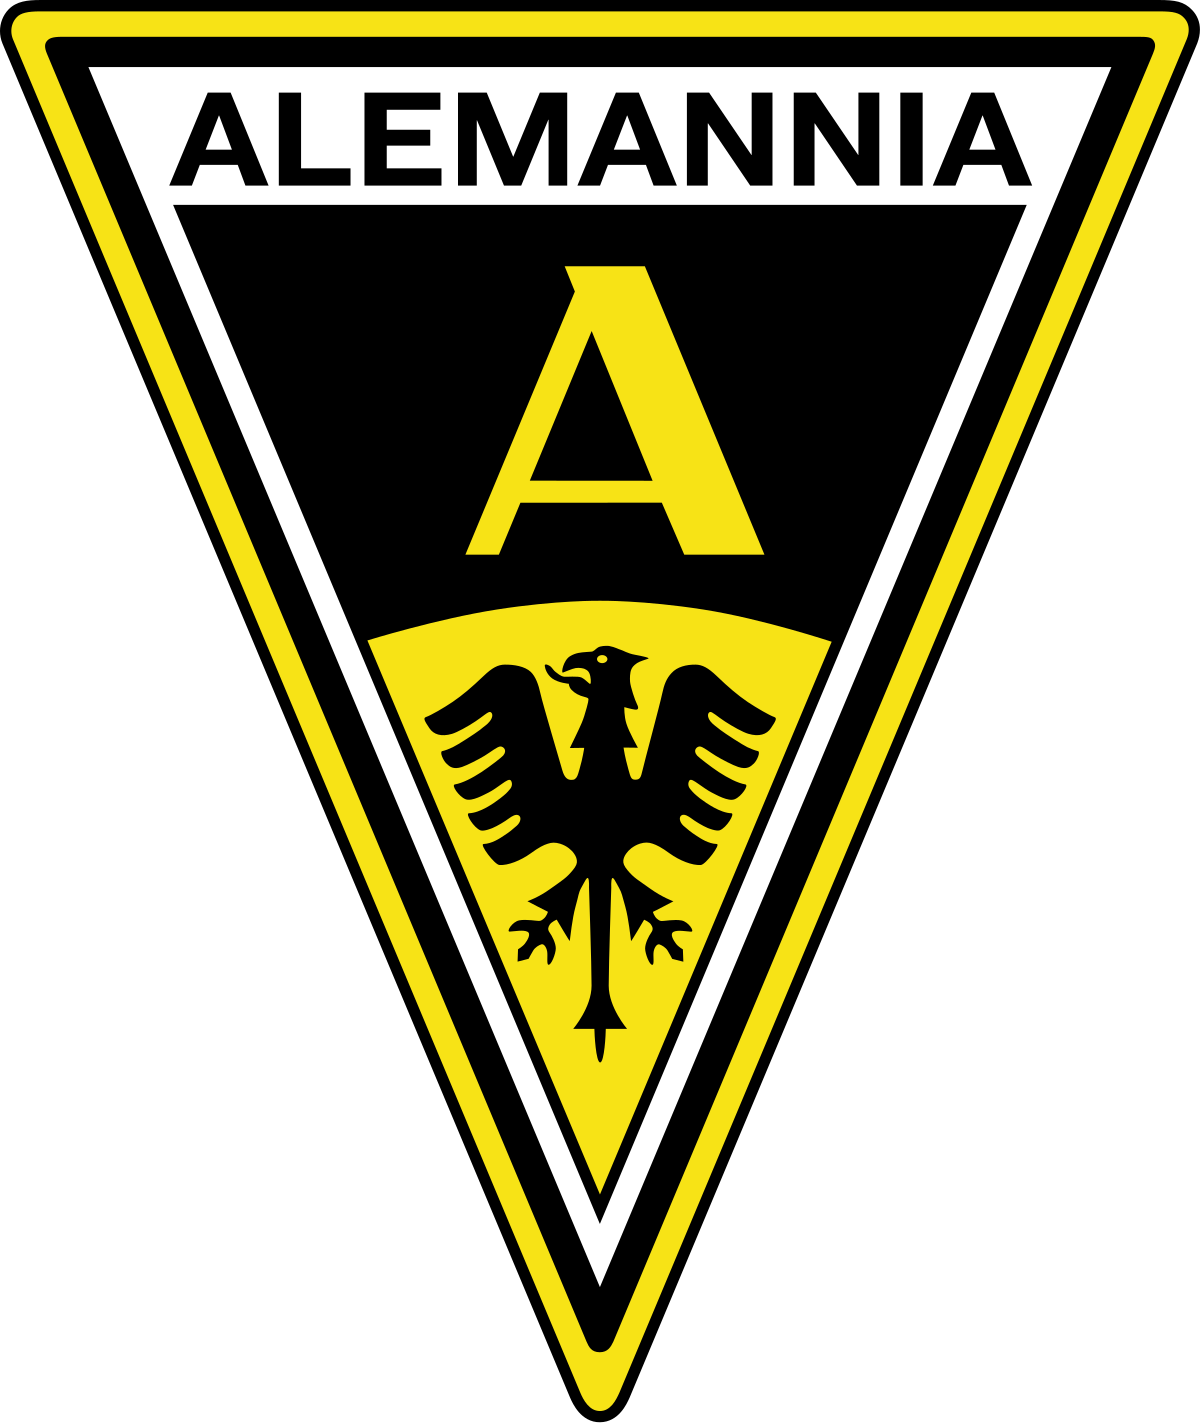 Alemannia Aachen GmbH